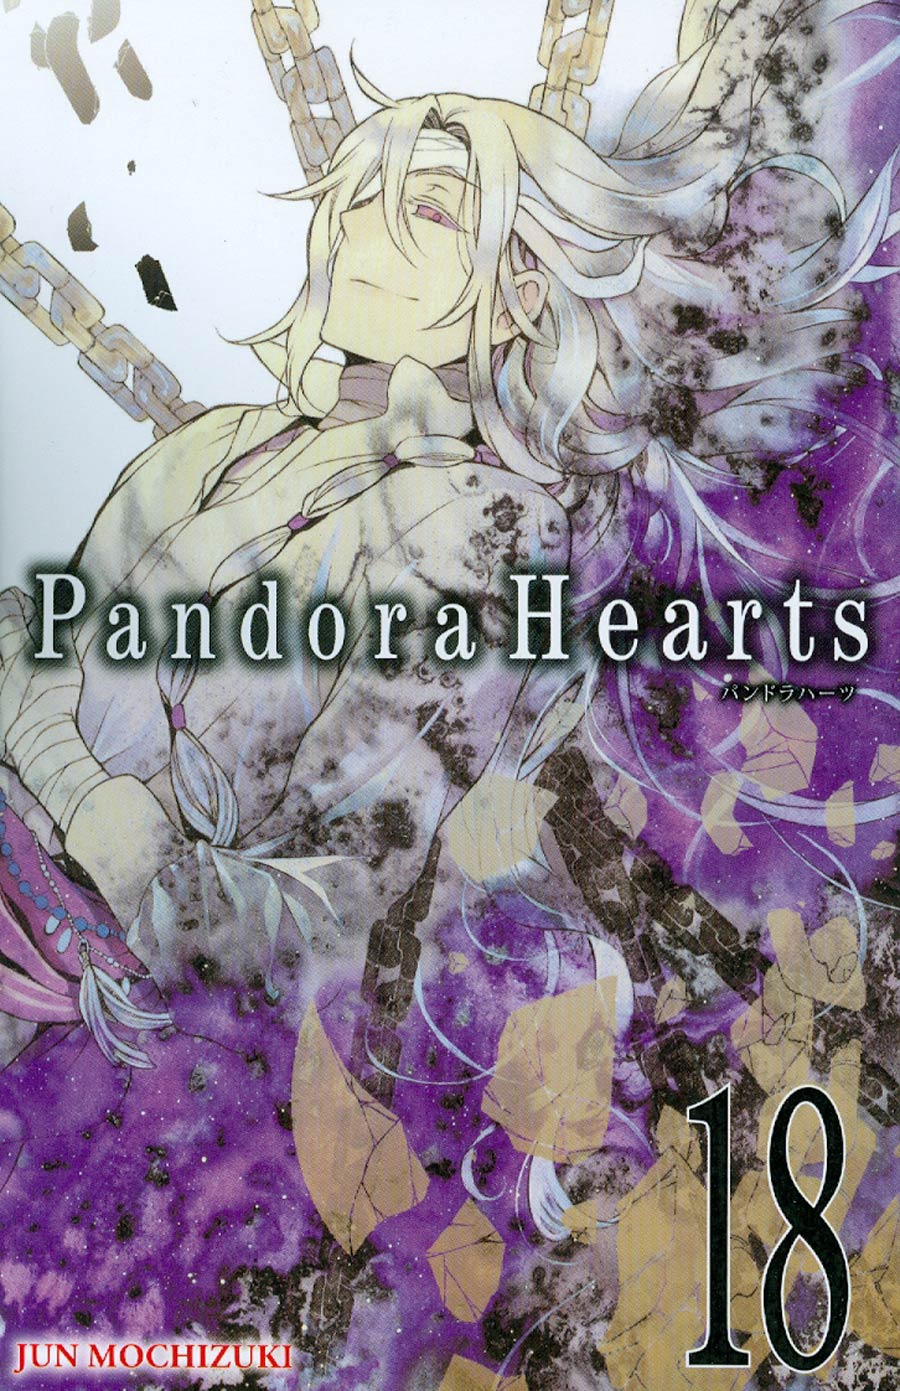 Pandora Hearts Vol 18 GN